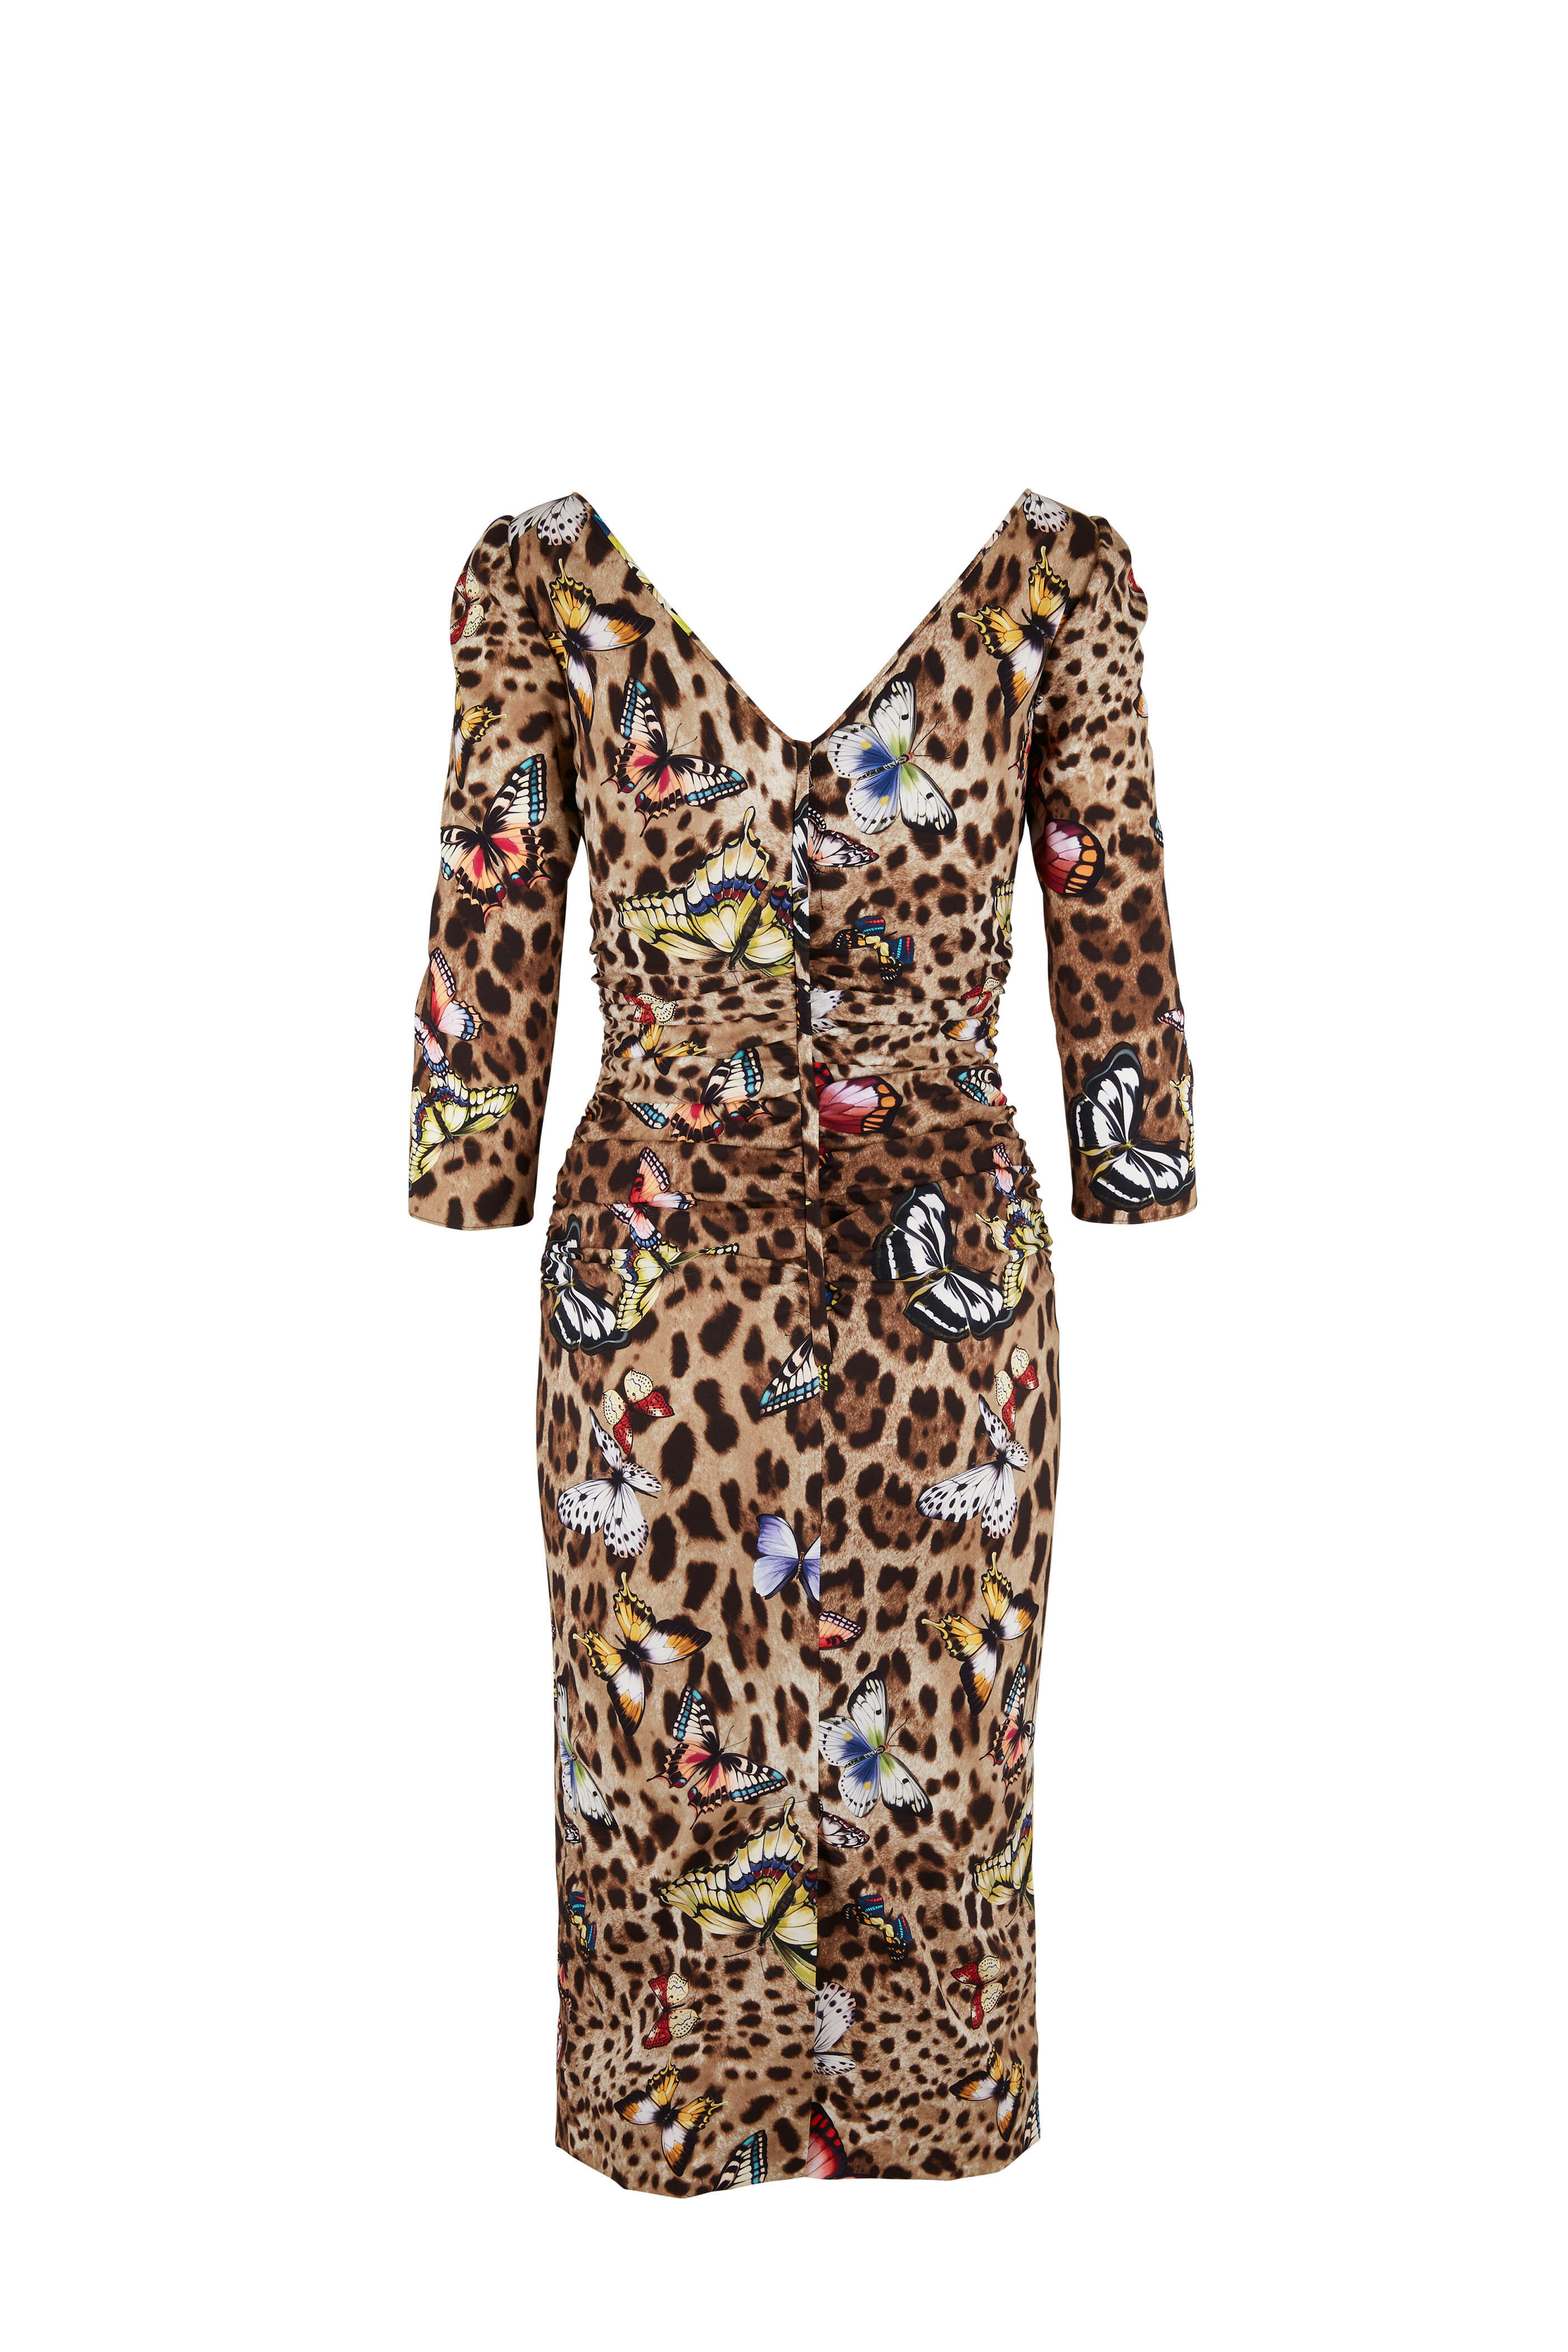 Dolce & Gabbana - Leopard & Butterfly Print Silk Dress